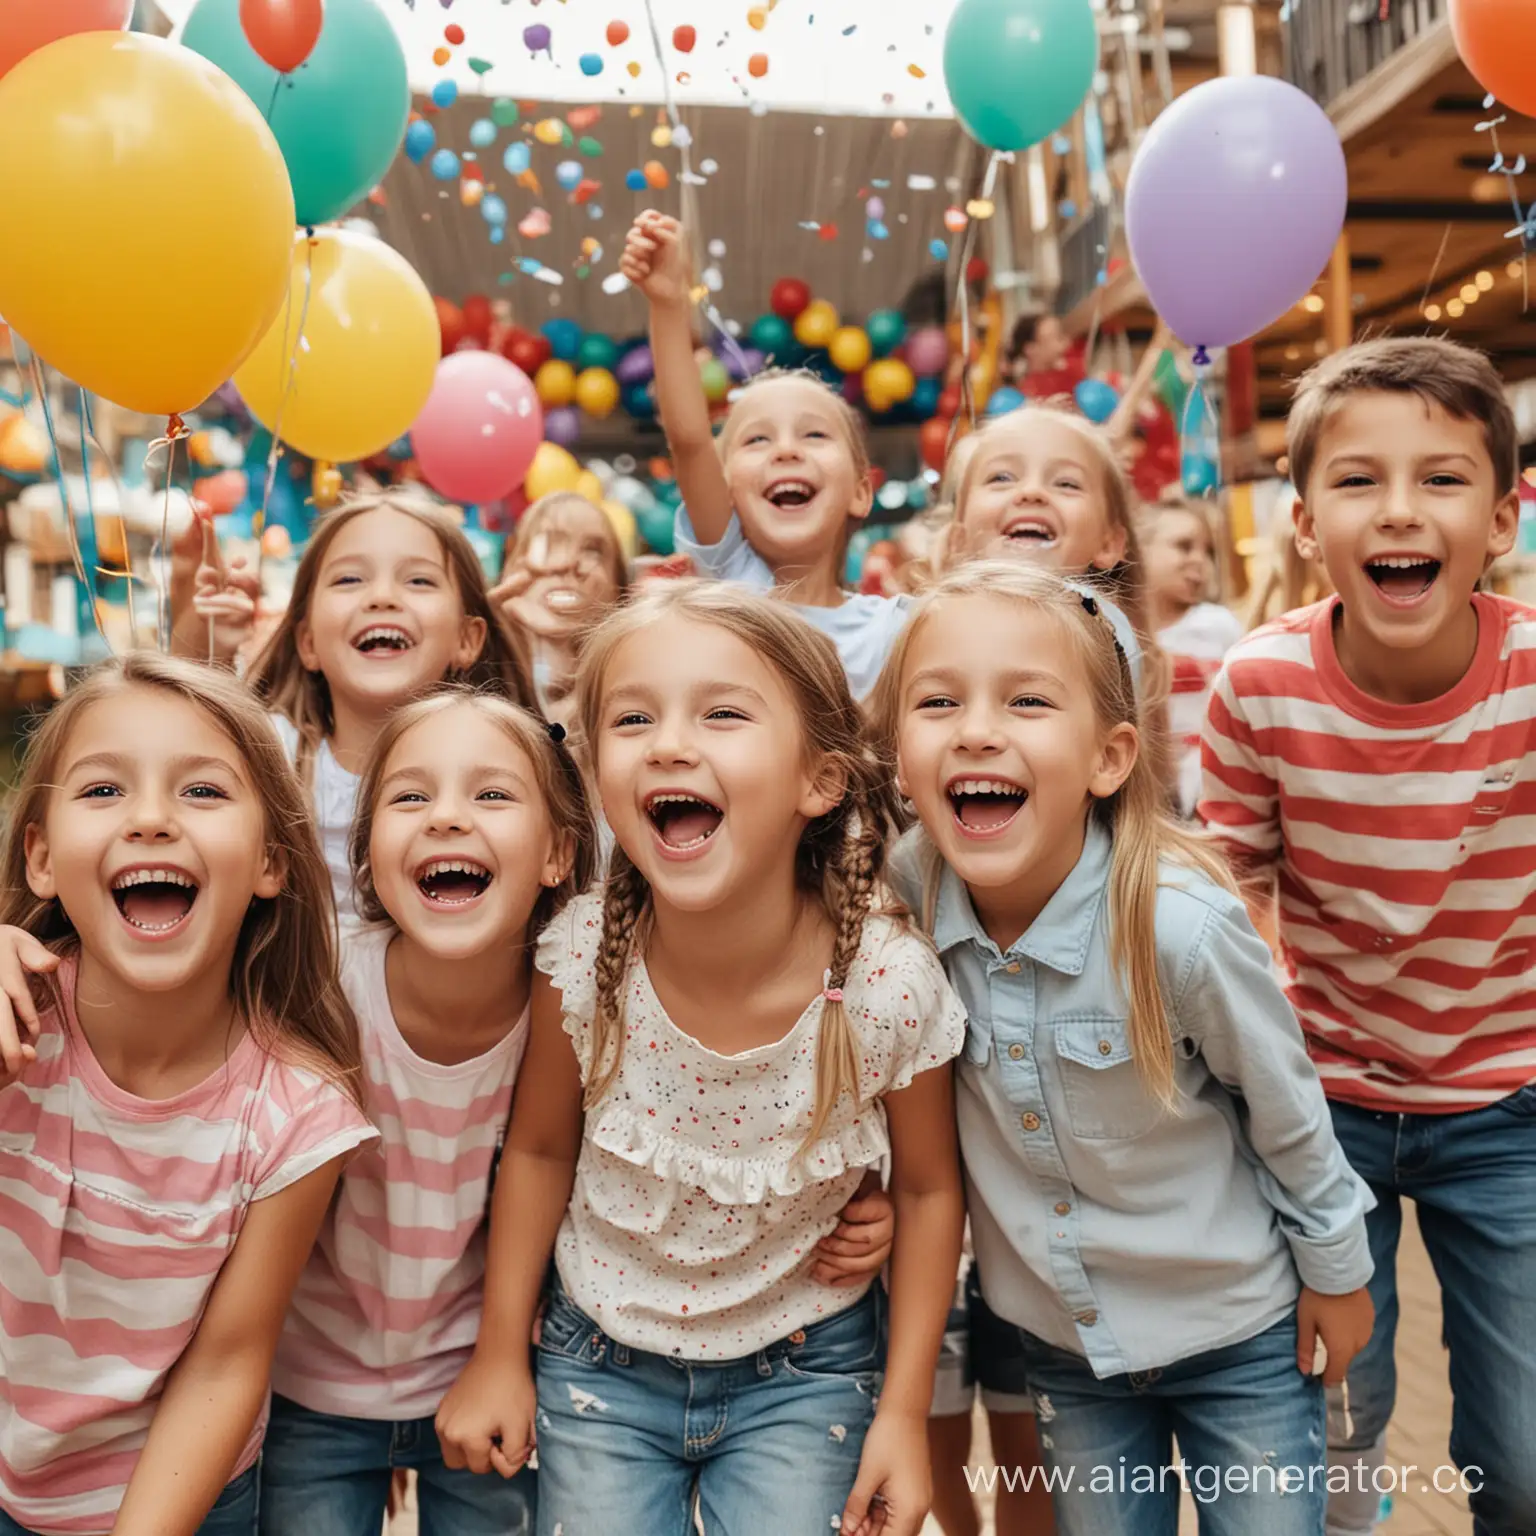 Фото счастливых детей на детской игровой площадке в торговом центре, они отмечают день рождения, смеются и улыбаются, вокруг много украшений и шаров